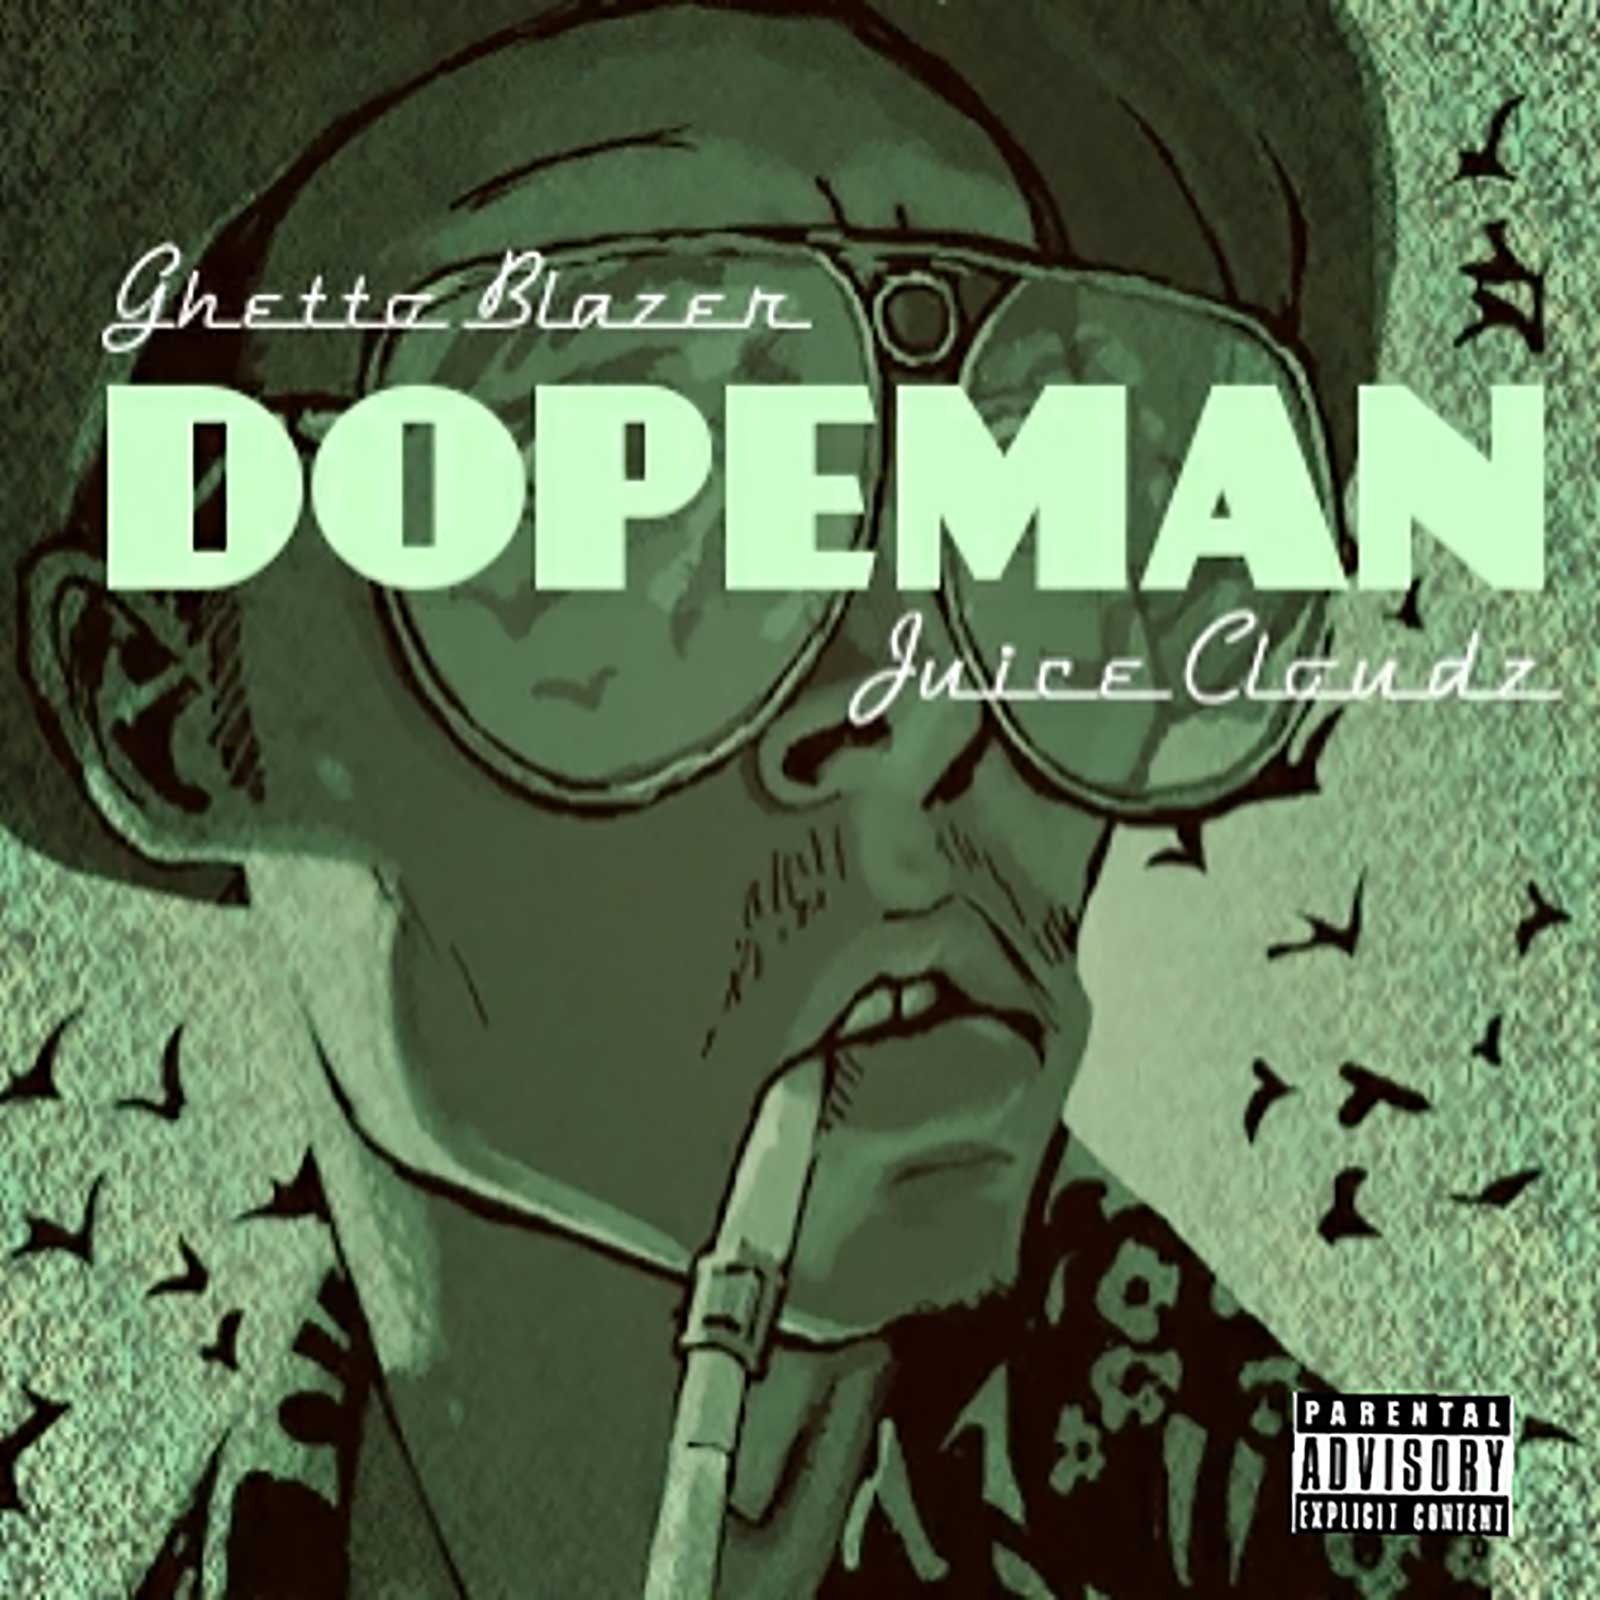 Dopeman by Juice Cloudz & Ghetto Blazer